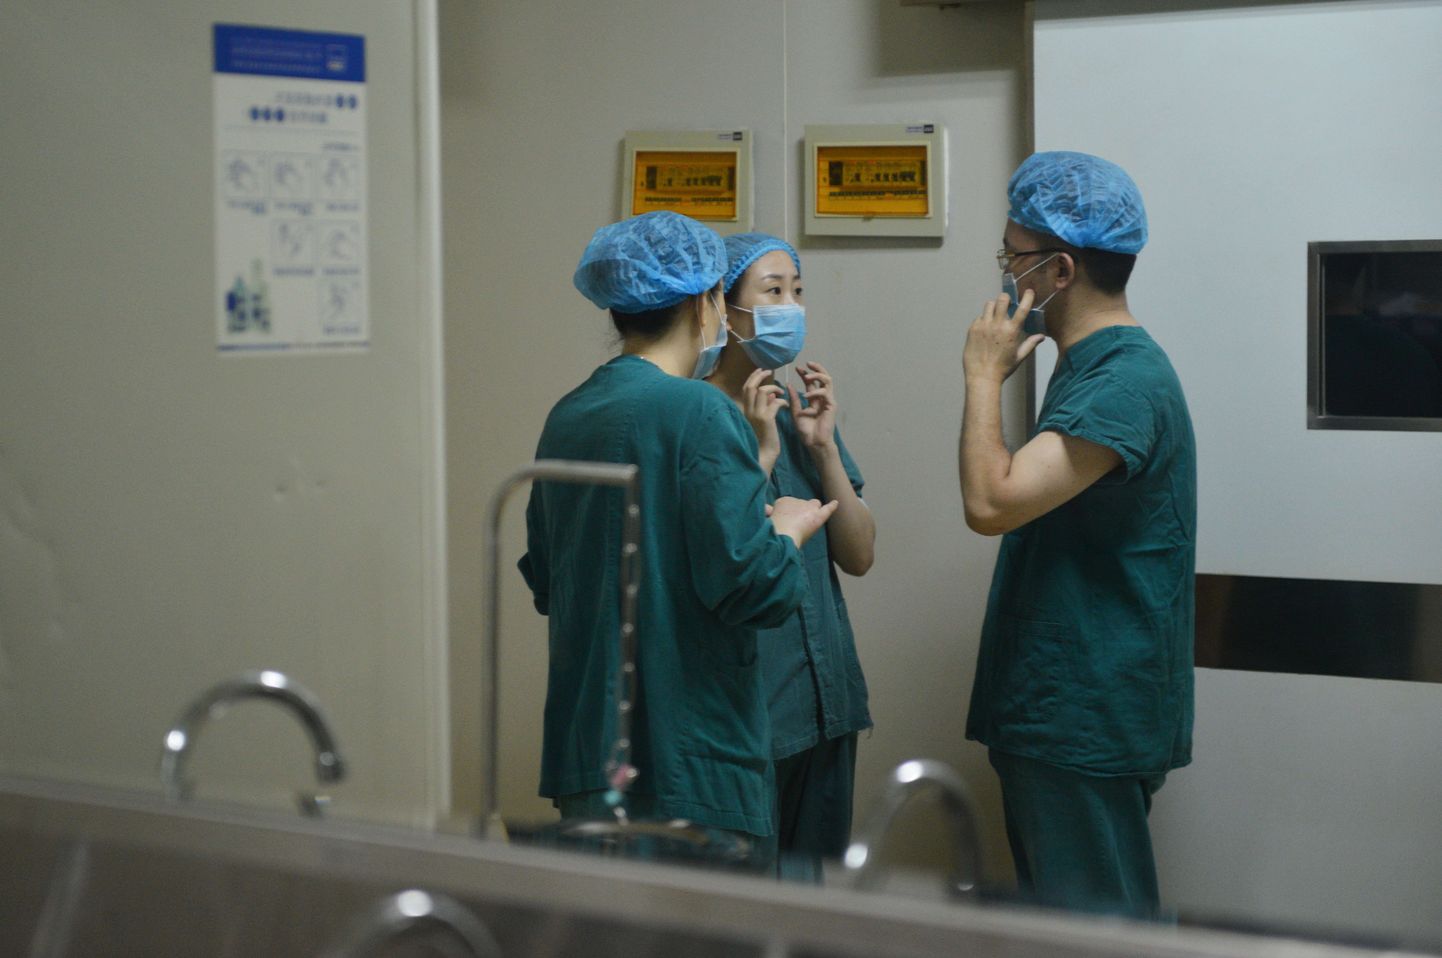 Lõuna-Korea ilukirurg kasutas patsientide lõualuuosi sisekujunduselemendina